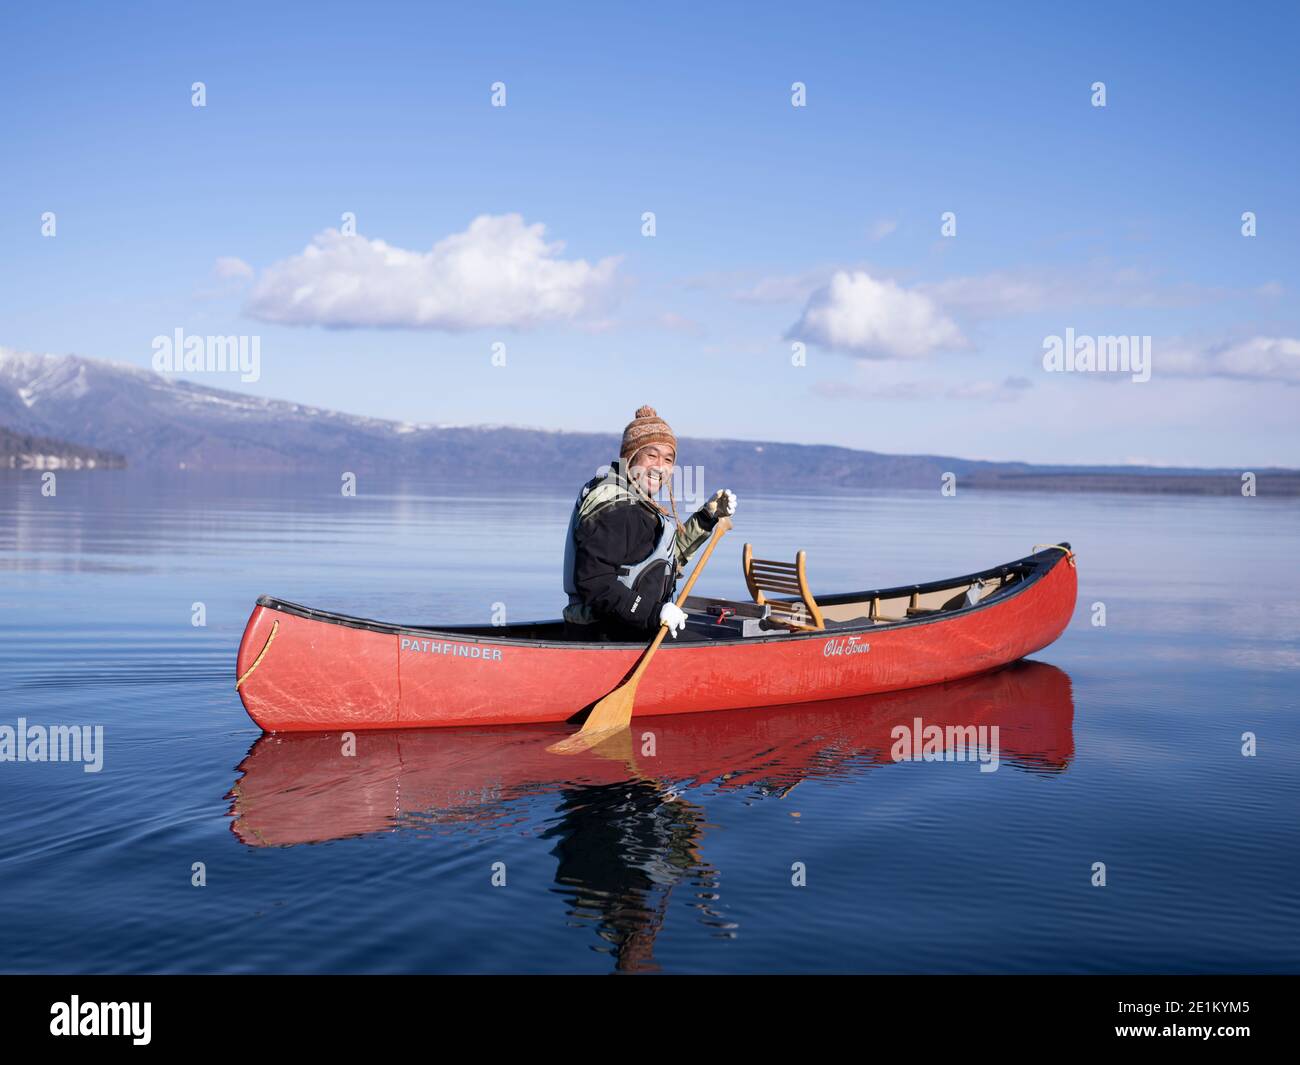 Guide local Kenichi Sobue, canoë-kayak d'hiver sur le lac Kussharo 屈斜路湖, Kussaro-ko caldera lac Parc national d'Akan, Hokkaido, Japon. Banque D'Images